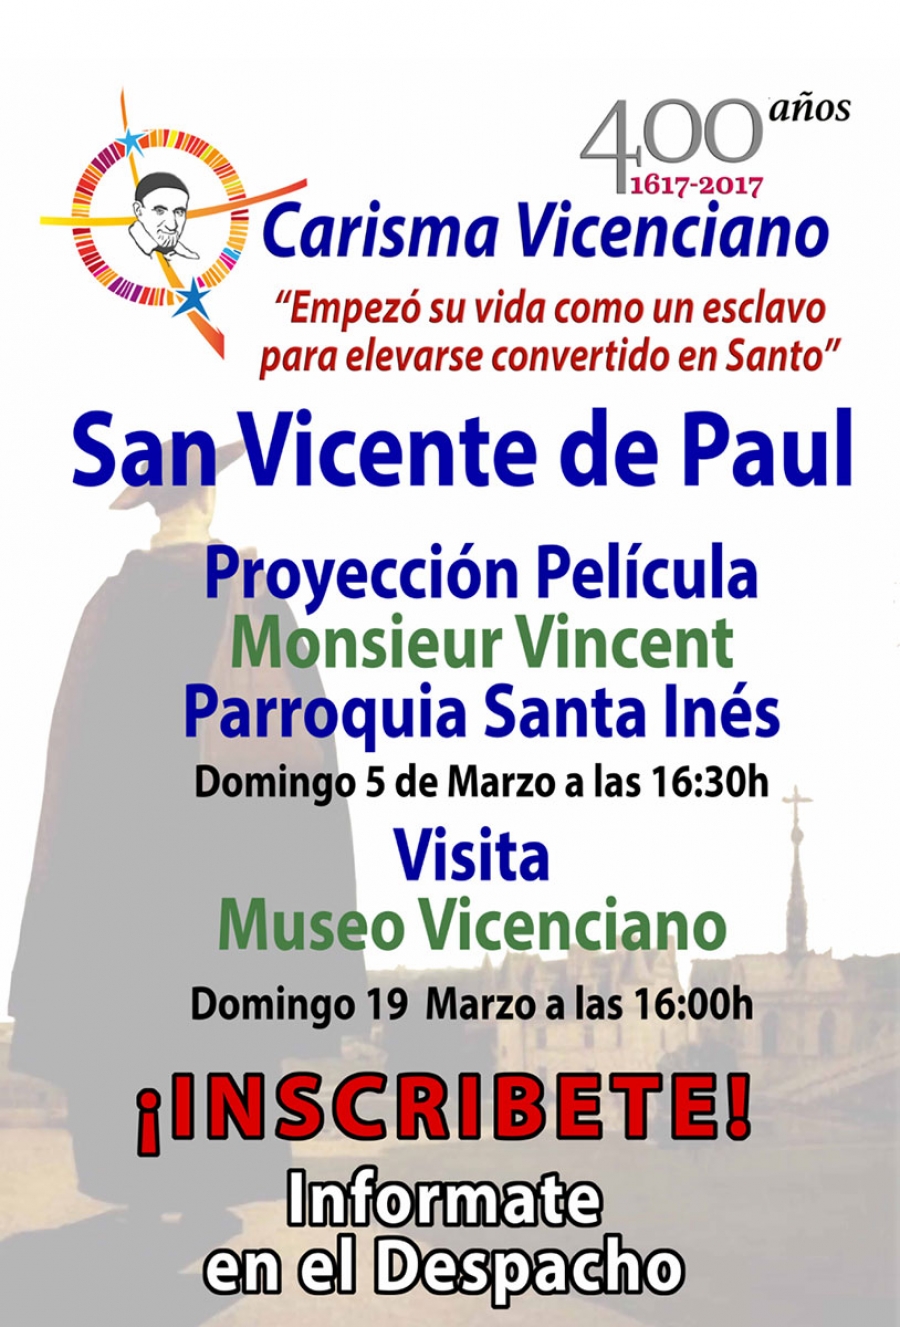 La parroquia Santa Inés acoge diversas actividades con motivo del 400 aniversario del Carisma Vicenciano